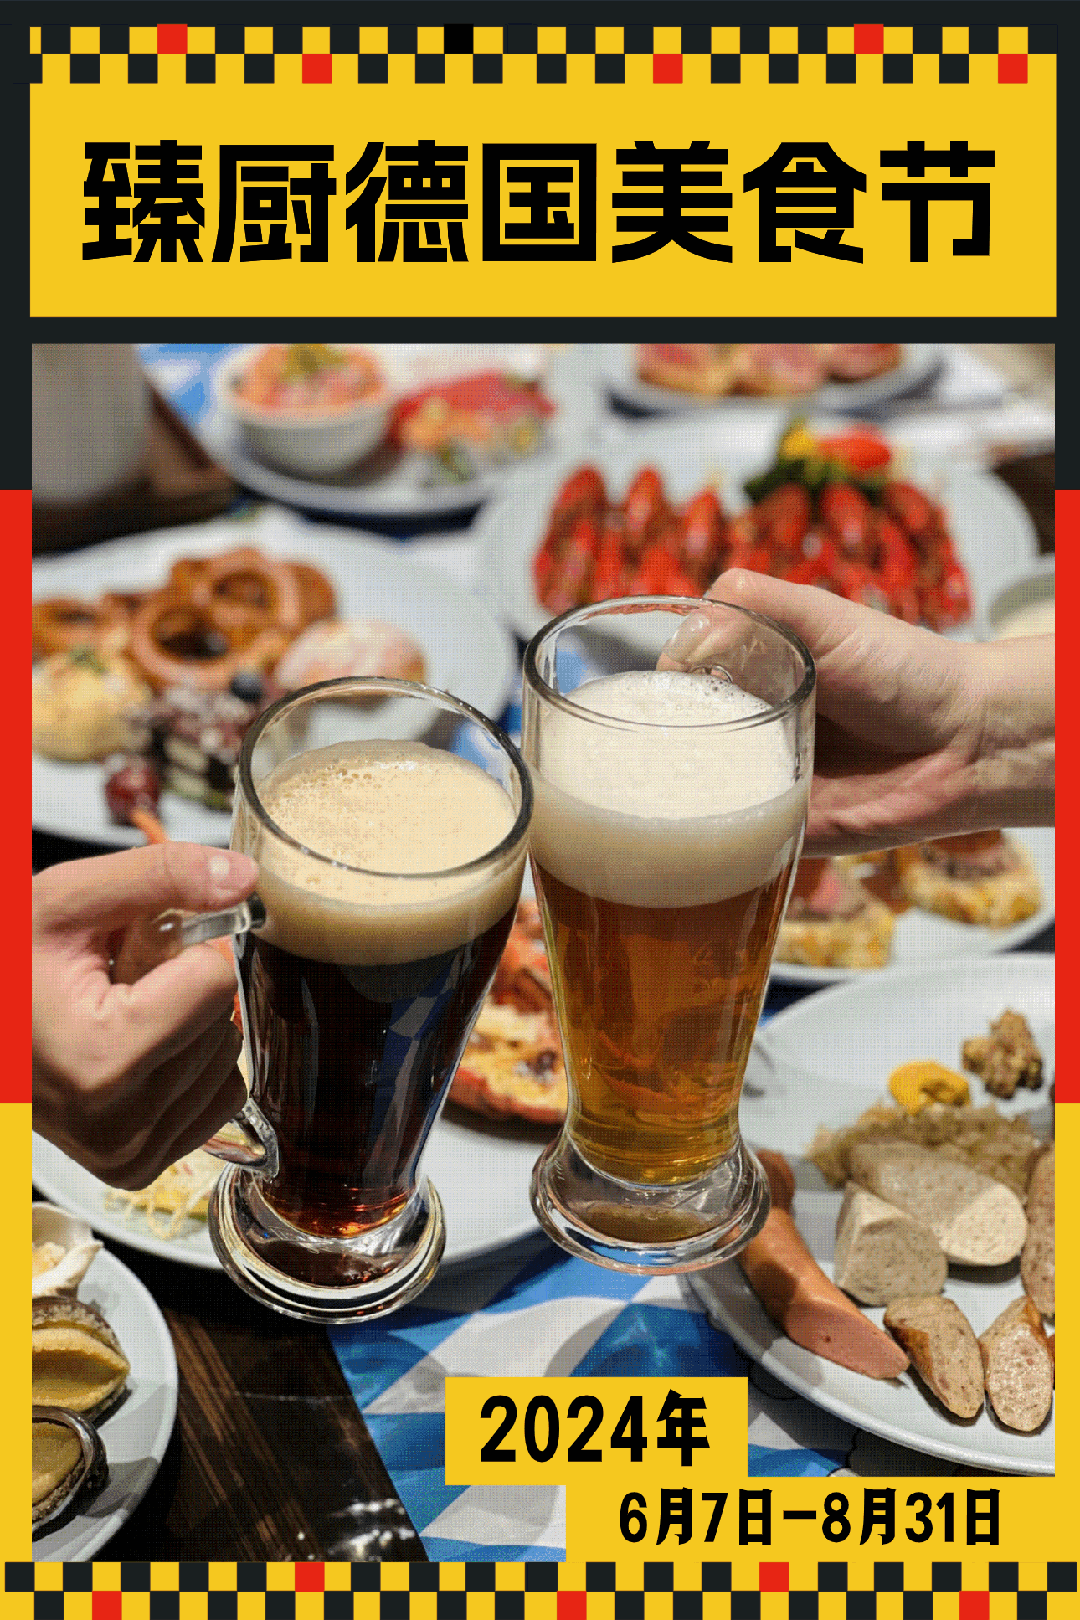 以德国风情美食和啤酒为主题的自助晚餐这个夏天,带你体验「大块吃肉